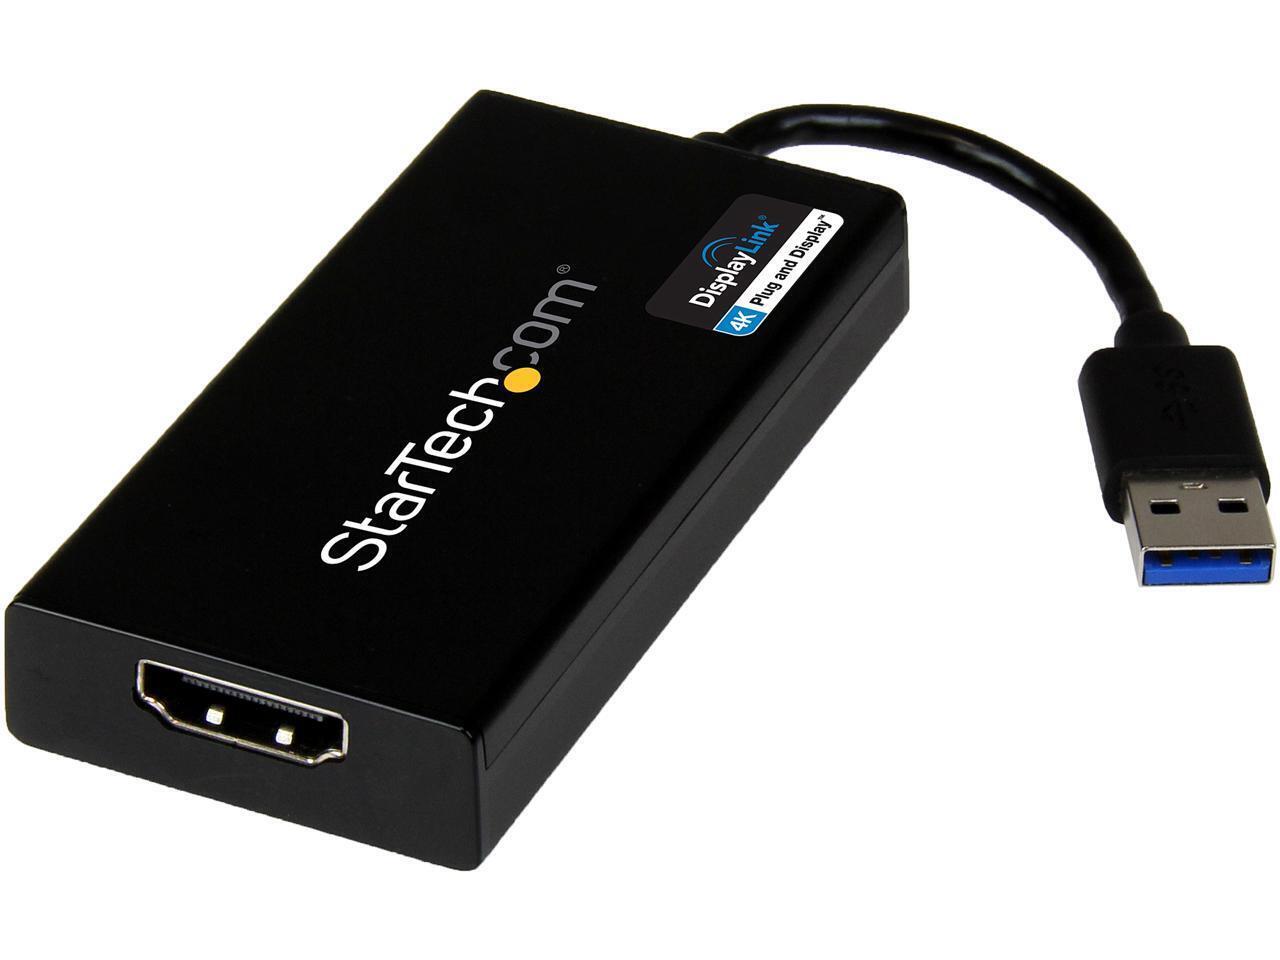 StarTech.com USB32HD4K USB 3.0 to HDMI Display Adapter 4K Ultra HD, DisplayLink